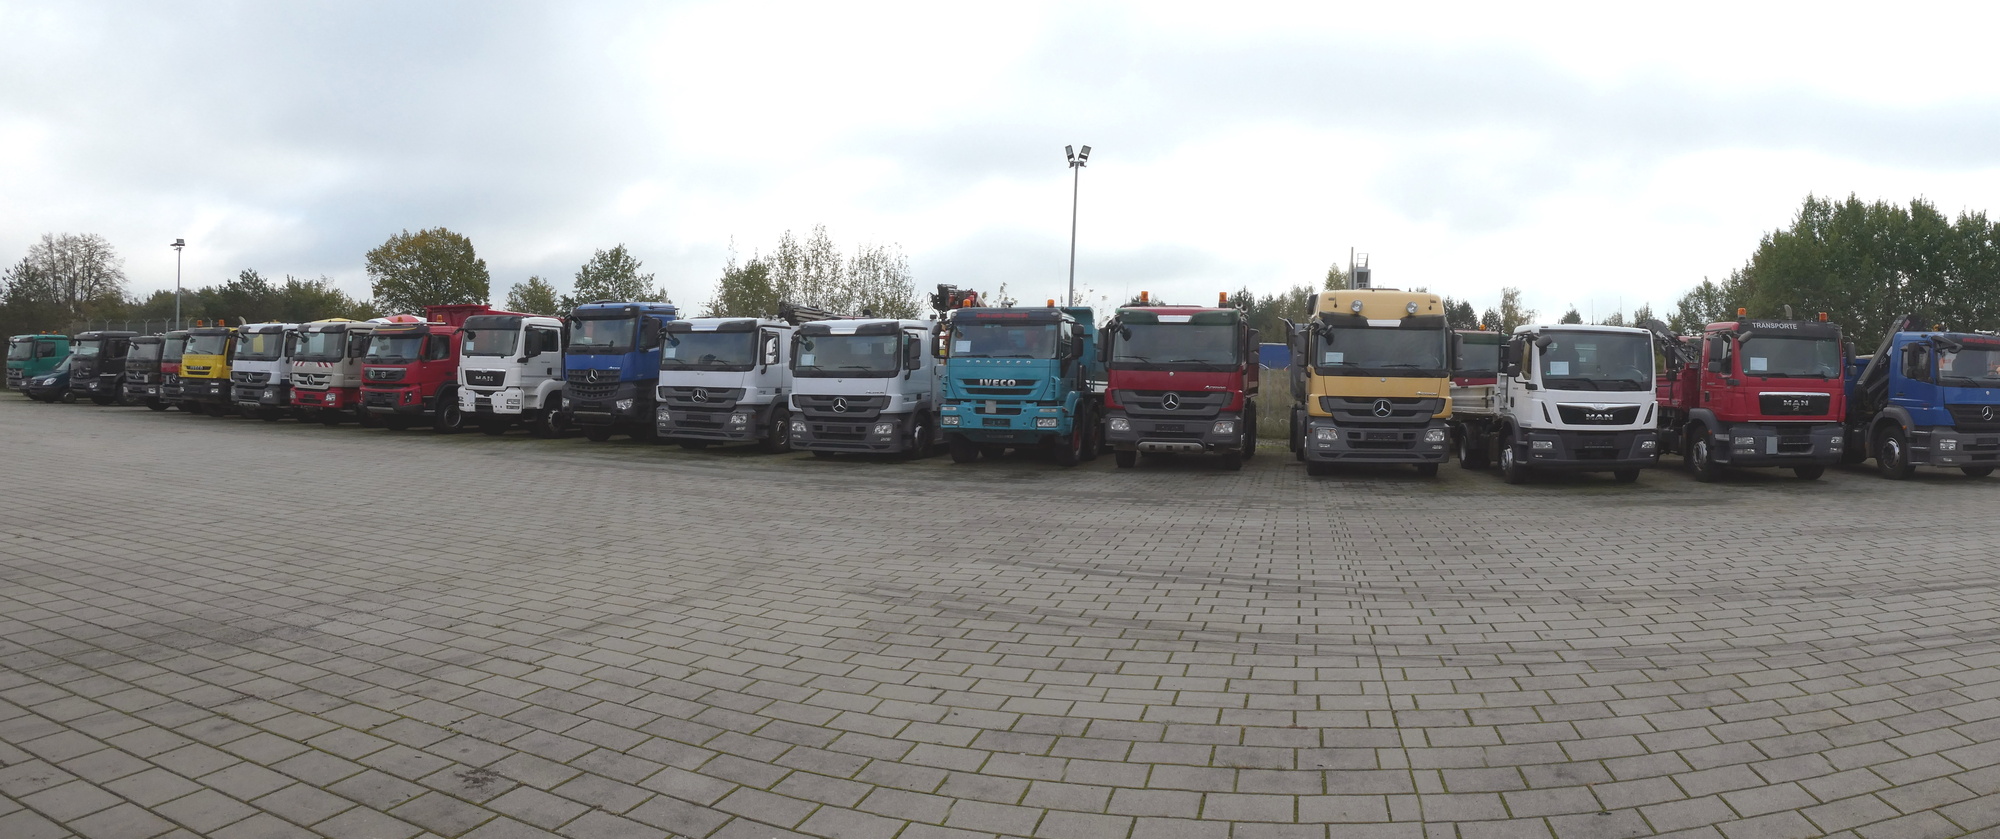 Henze Truck GmbH - Trucks undefined: picture 1